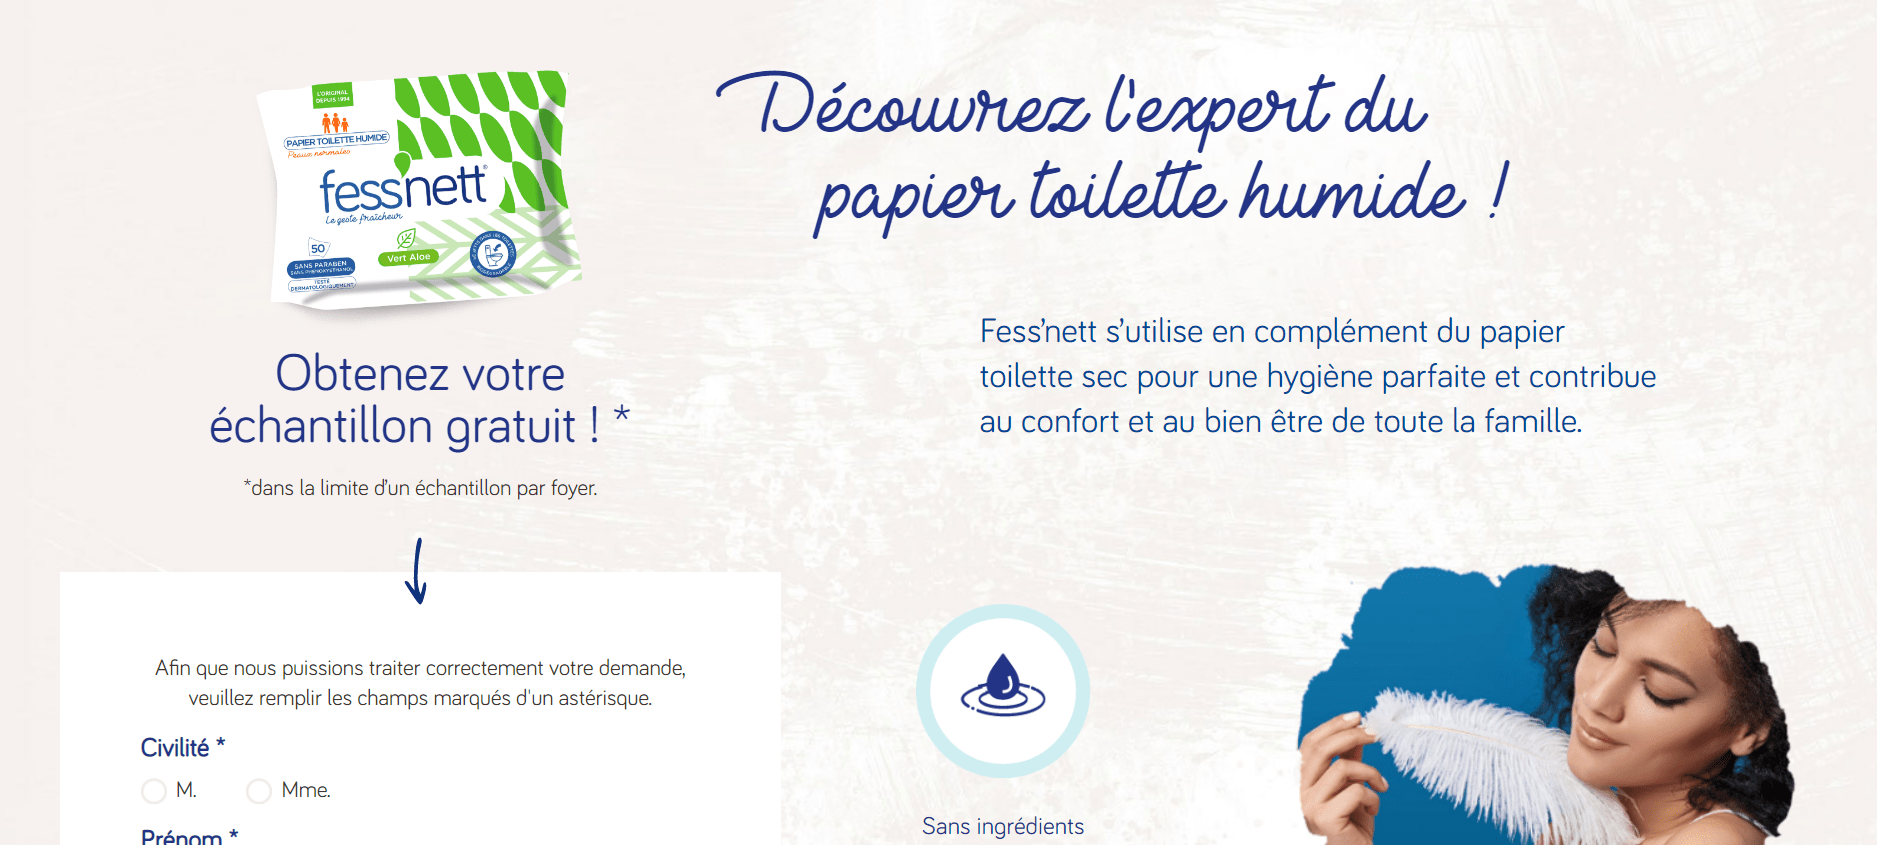 Recevez votre échantillon gratuit de papier toilette humide Fess'nett